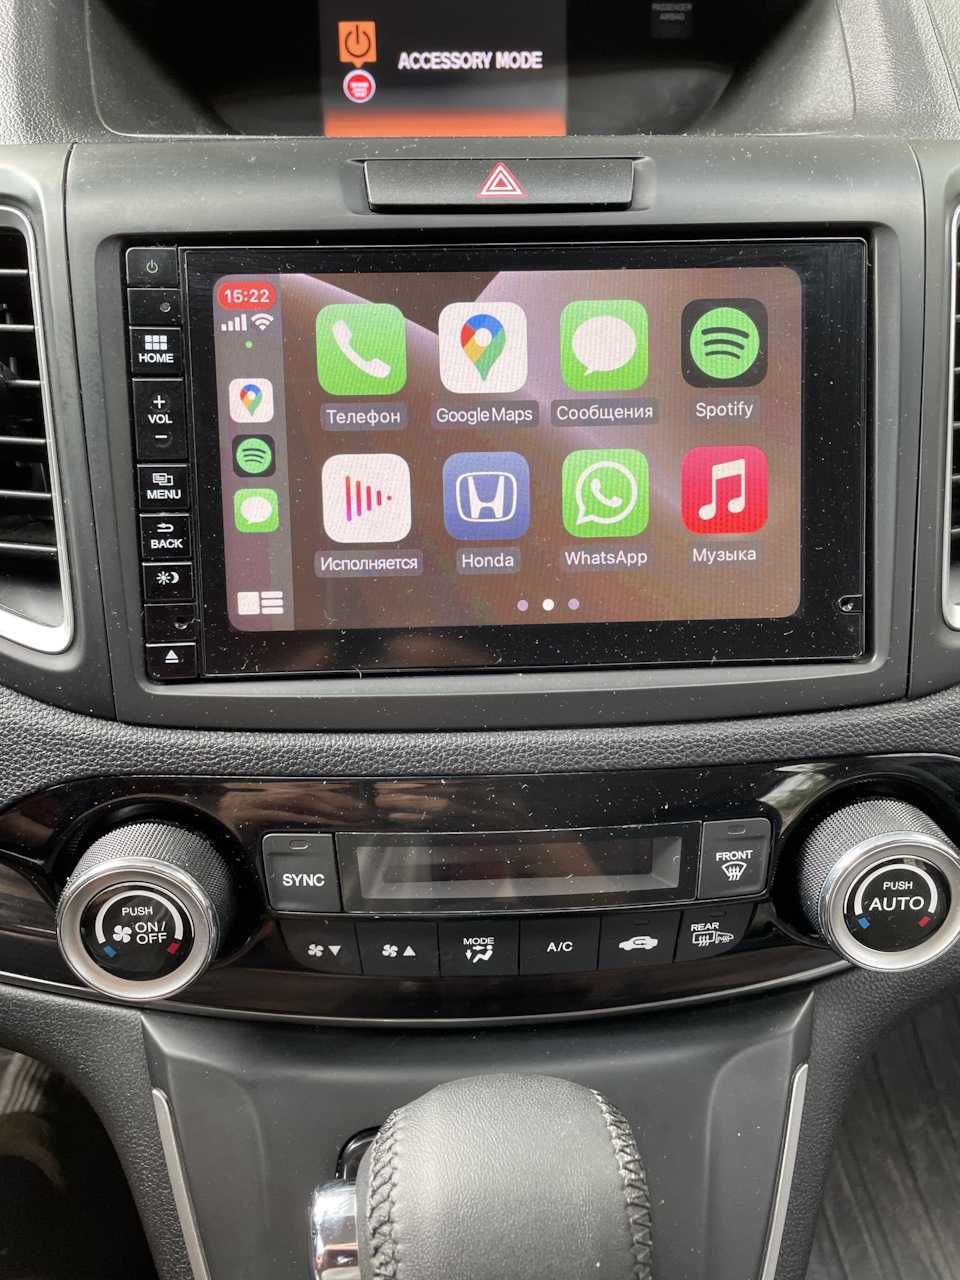 Honda CRV 2015 Apple CarPlay